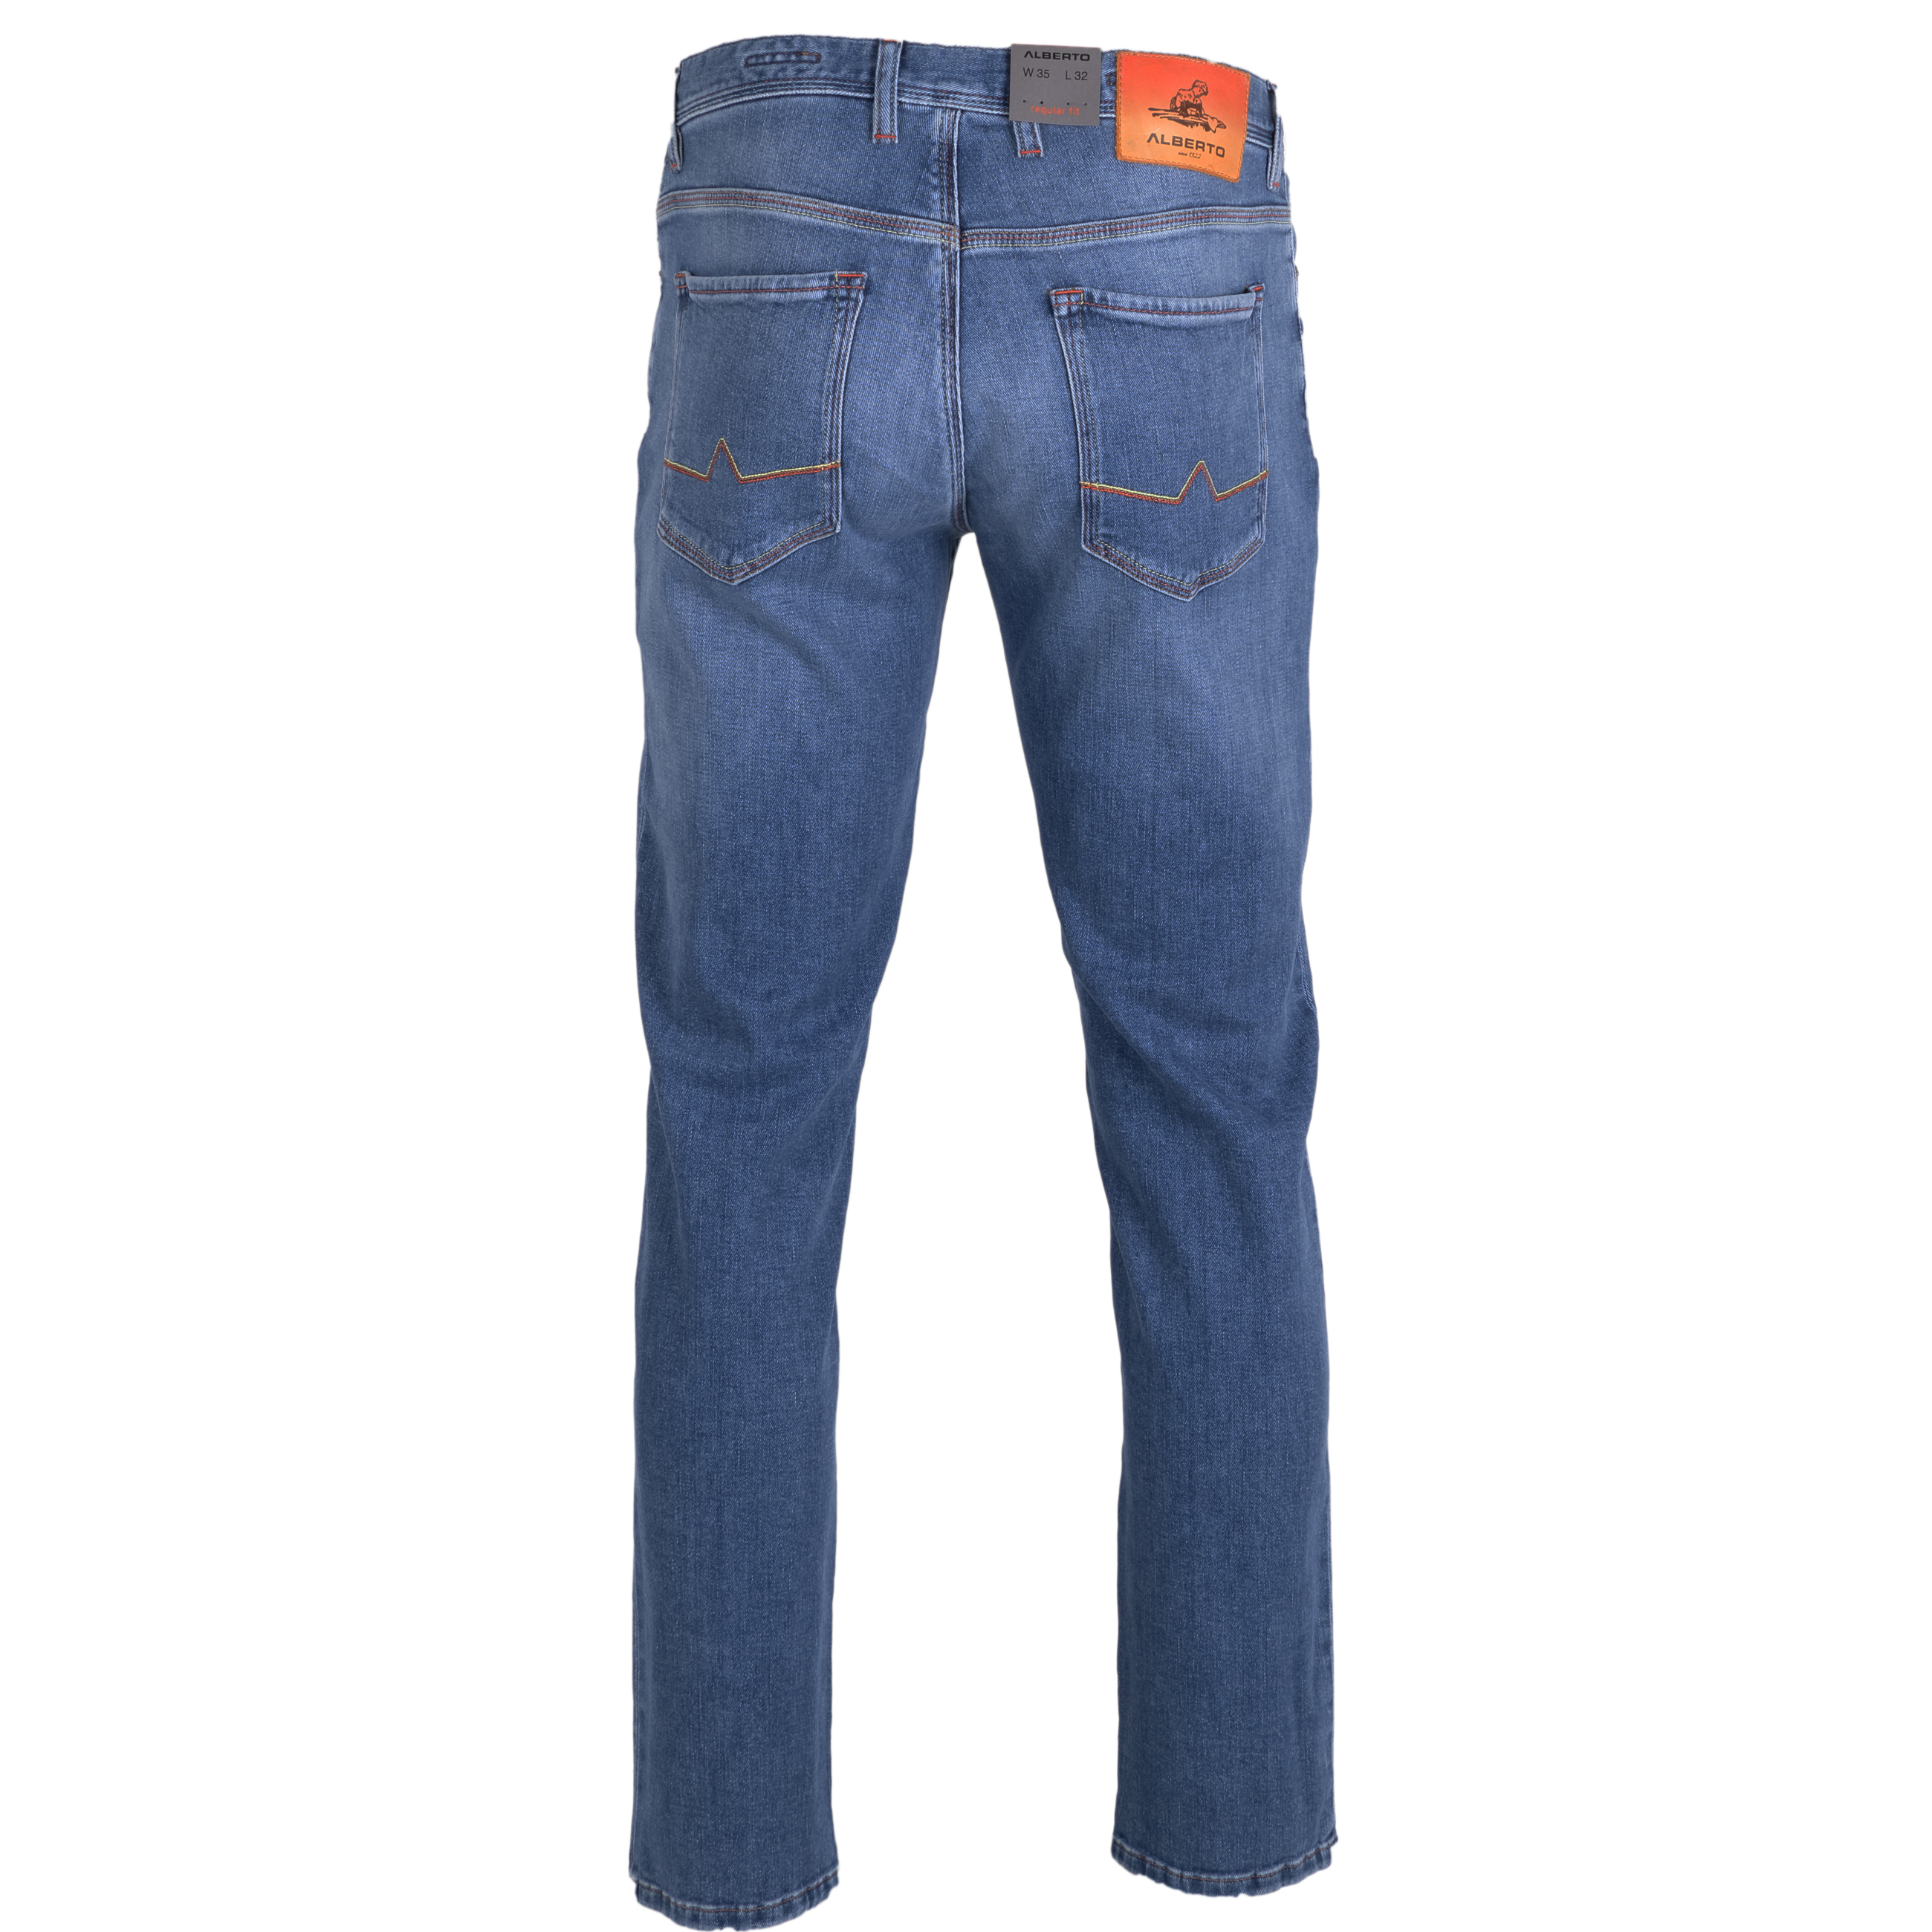 Alberto Jeans Pipe regular fit 31/34 blau